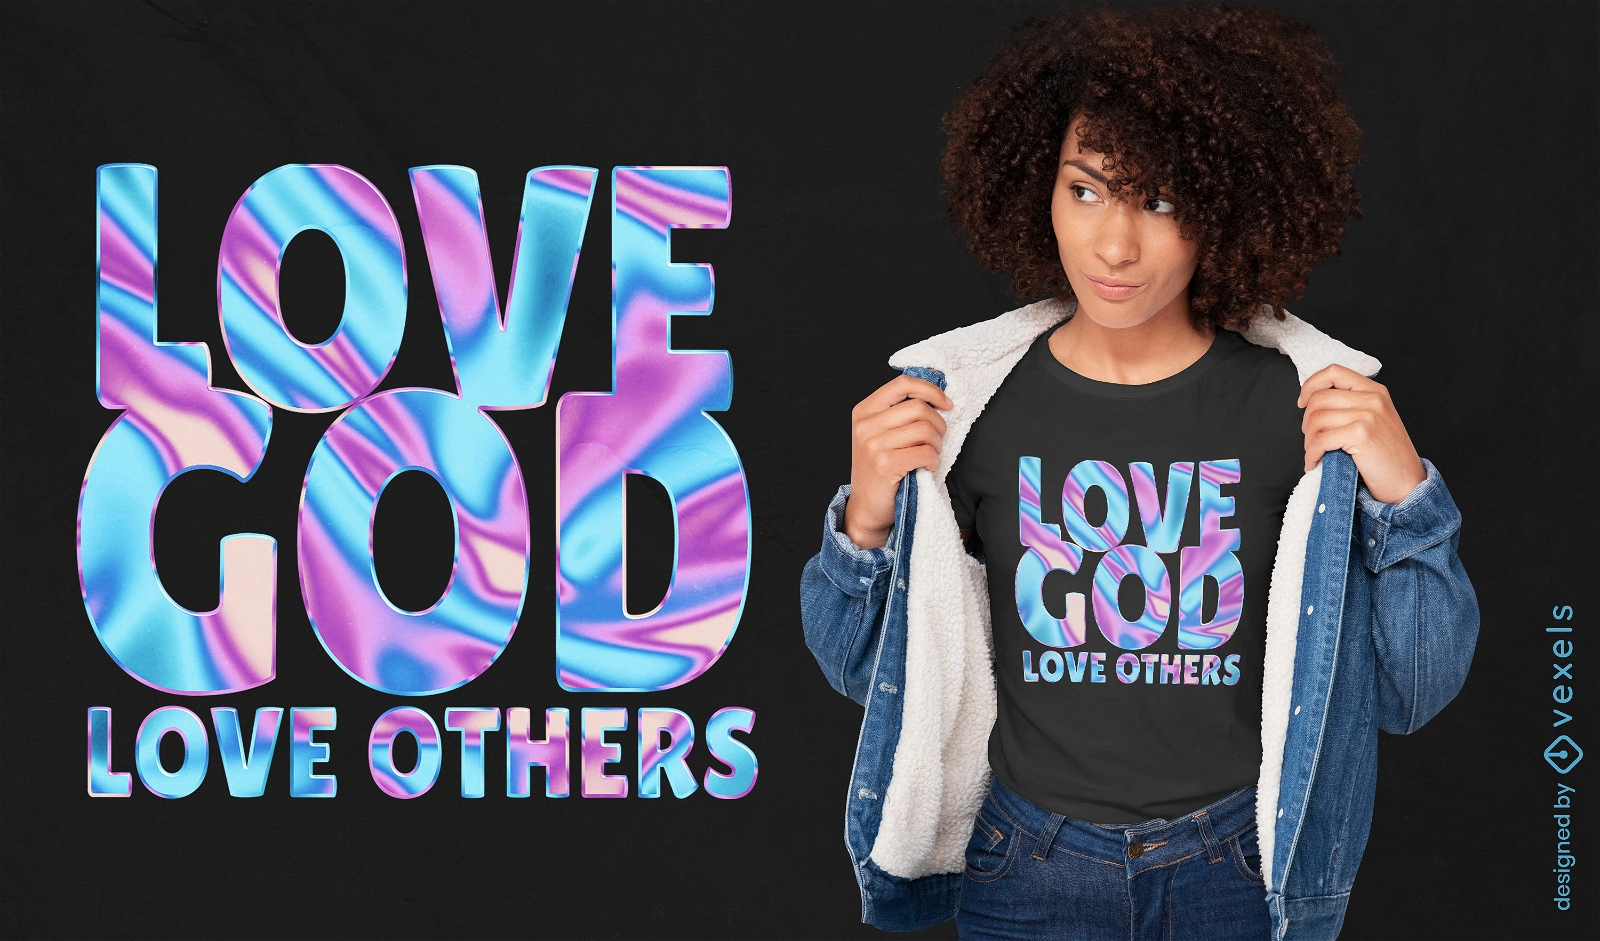 Diseño de camiseta con cita religiosa inspiradora.